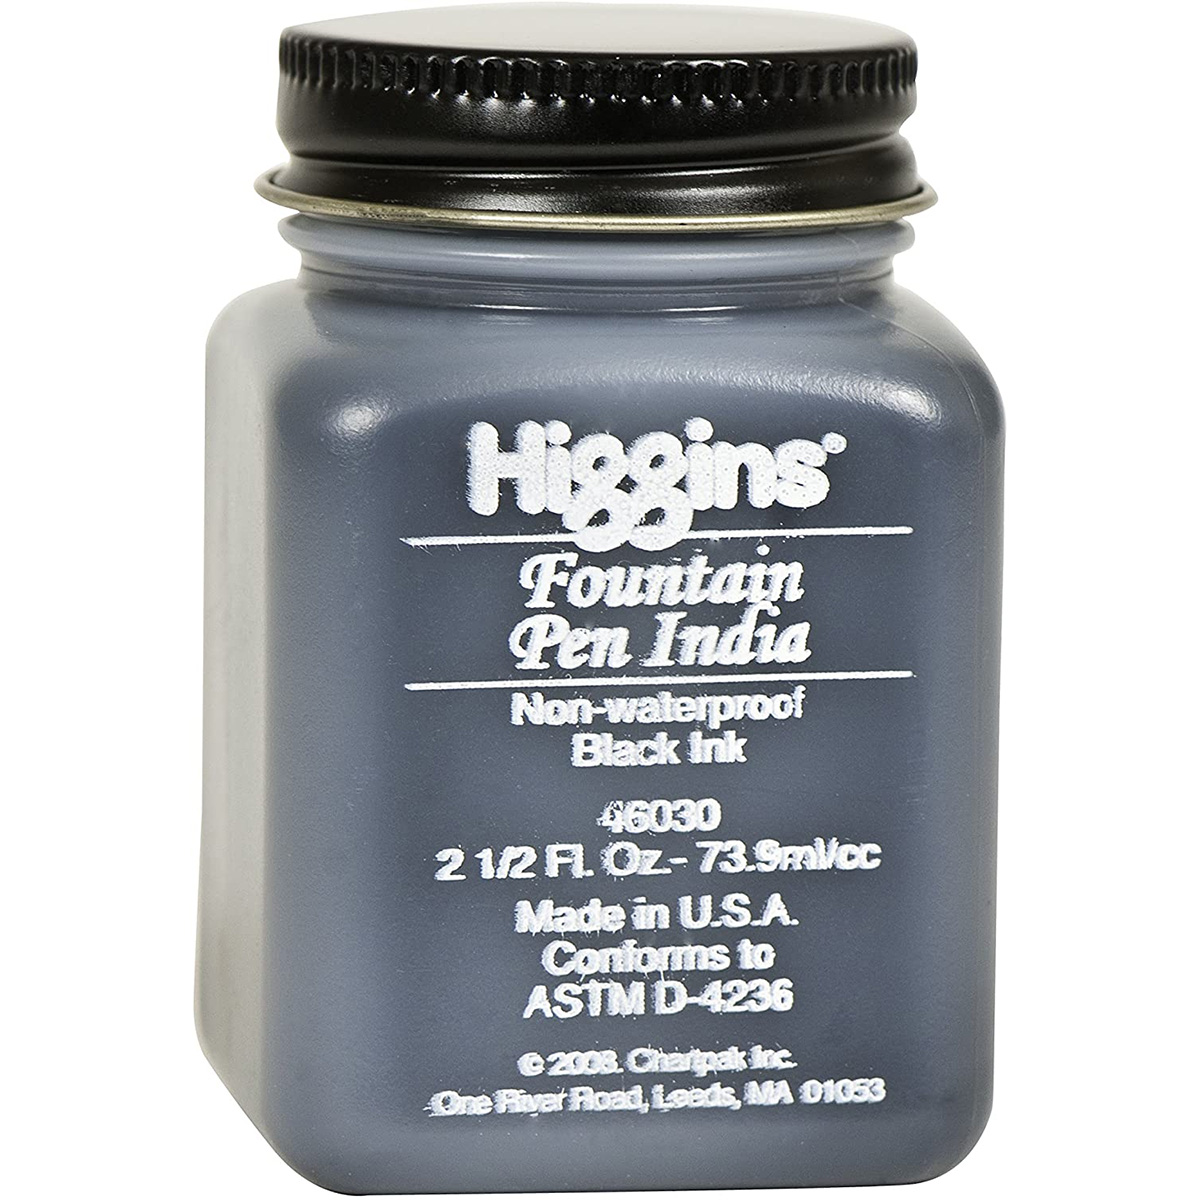 higgins india ink cleaner